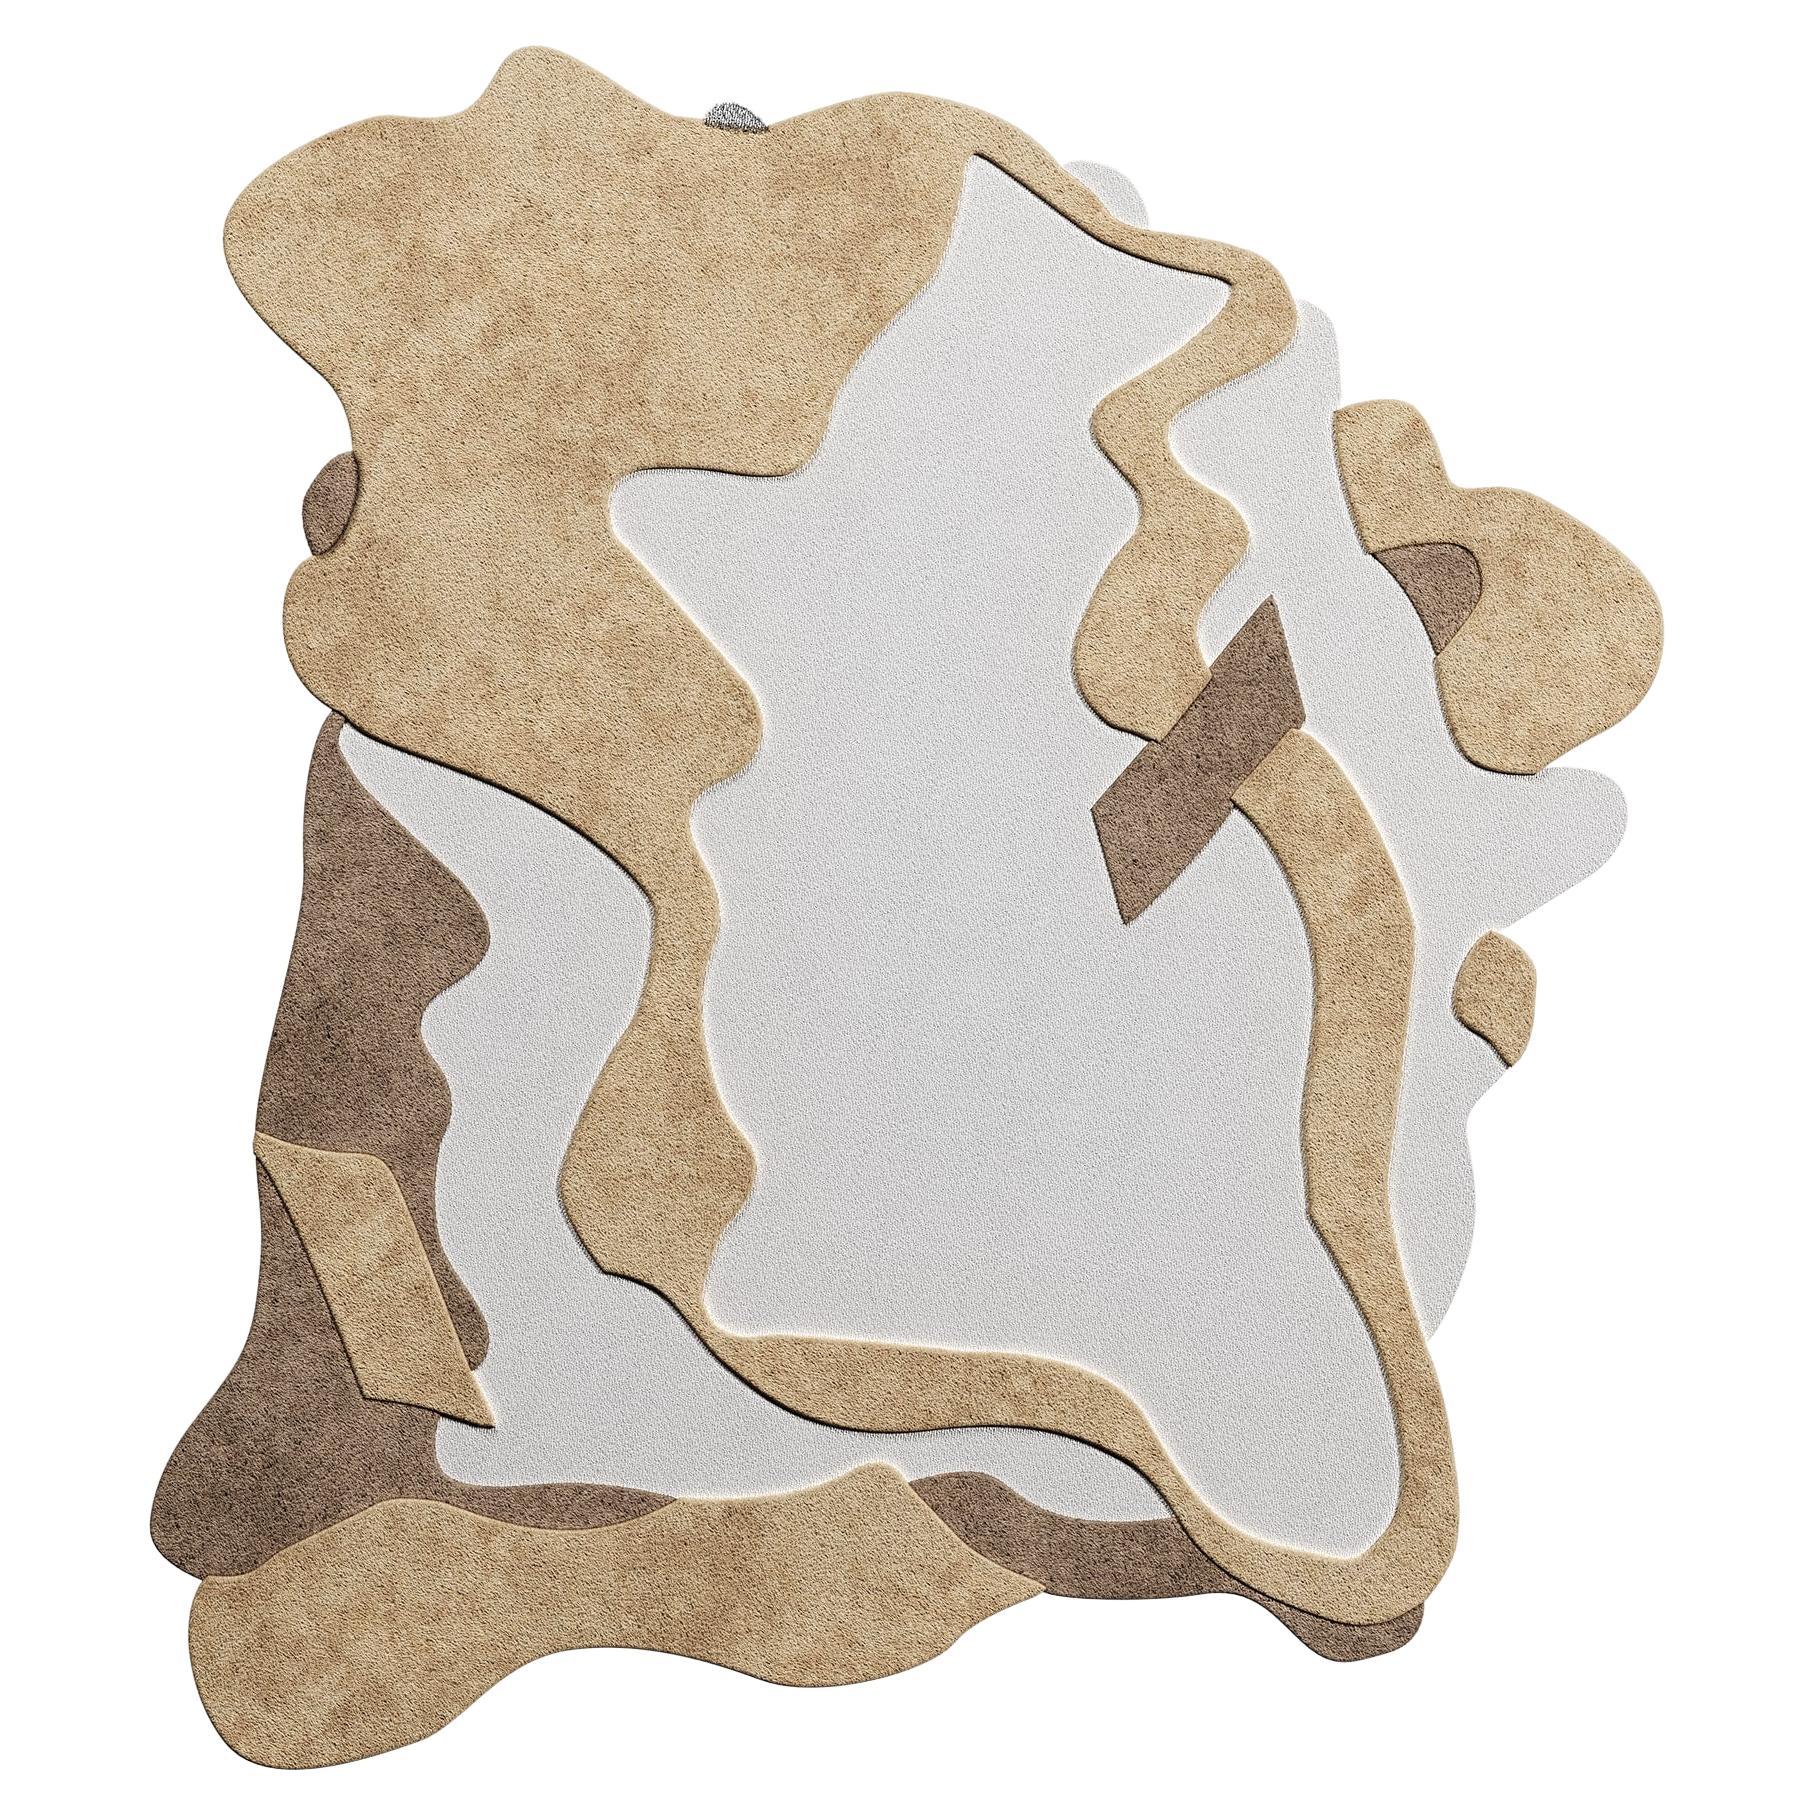 21st Century Modern Abstrakt Unregelmäßige Form Pastell Hand-Tufted Teppich Grau & Creme